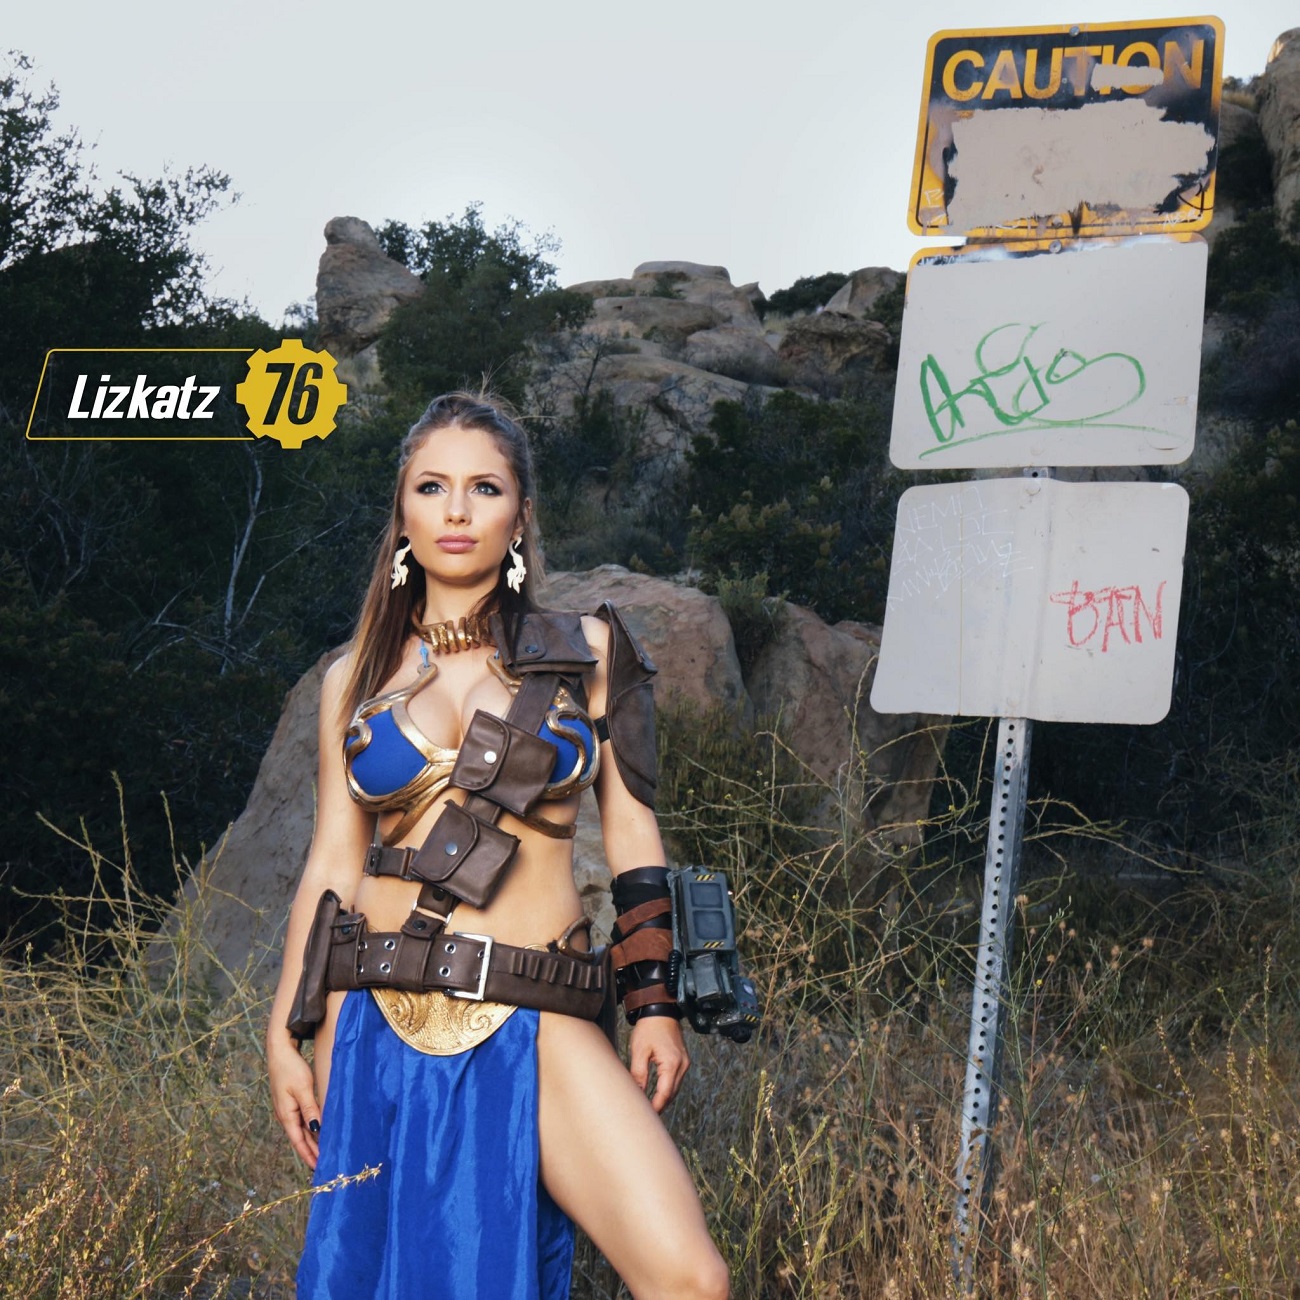 People 1300x1300 Liz Katz model celebrity women women outdoors Fallout